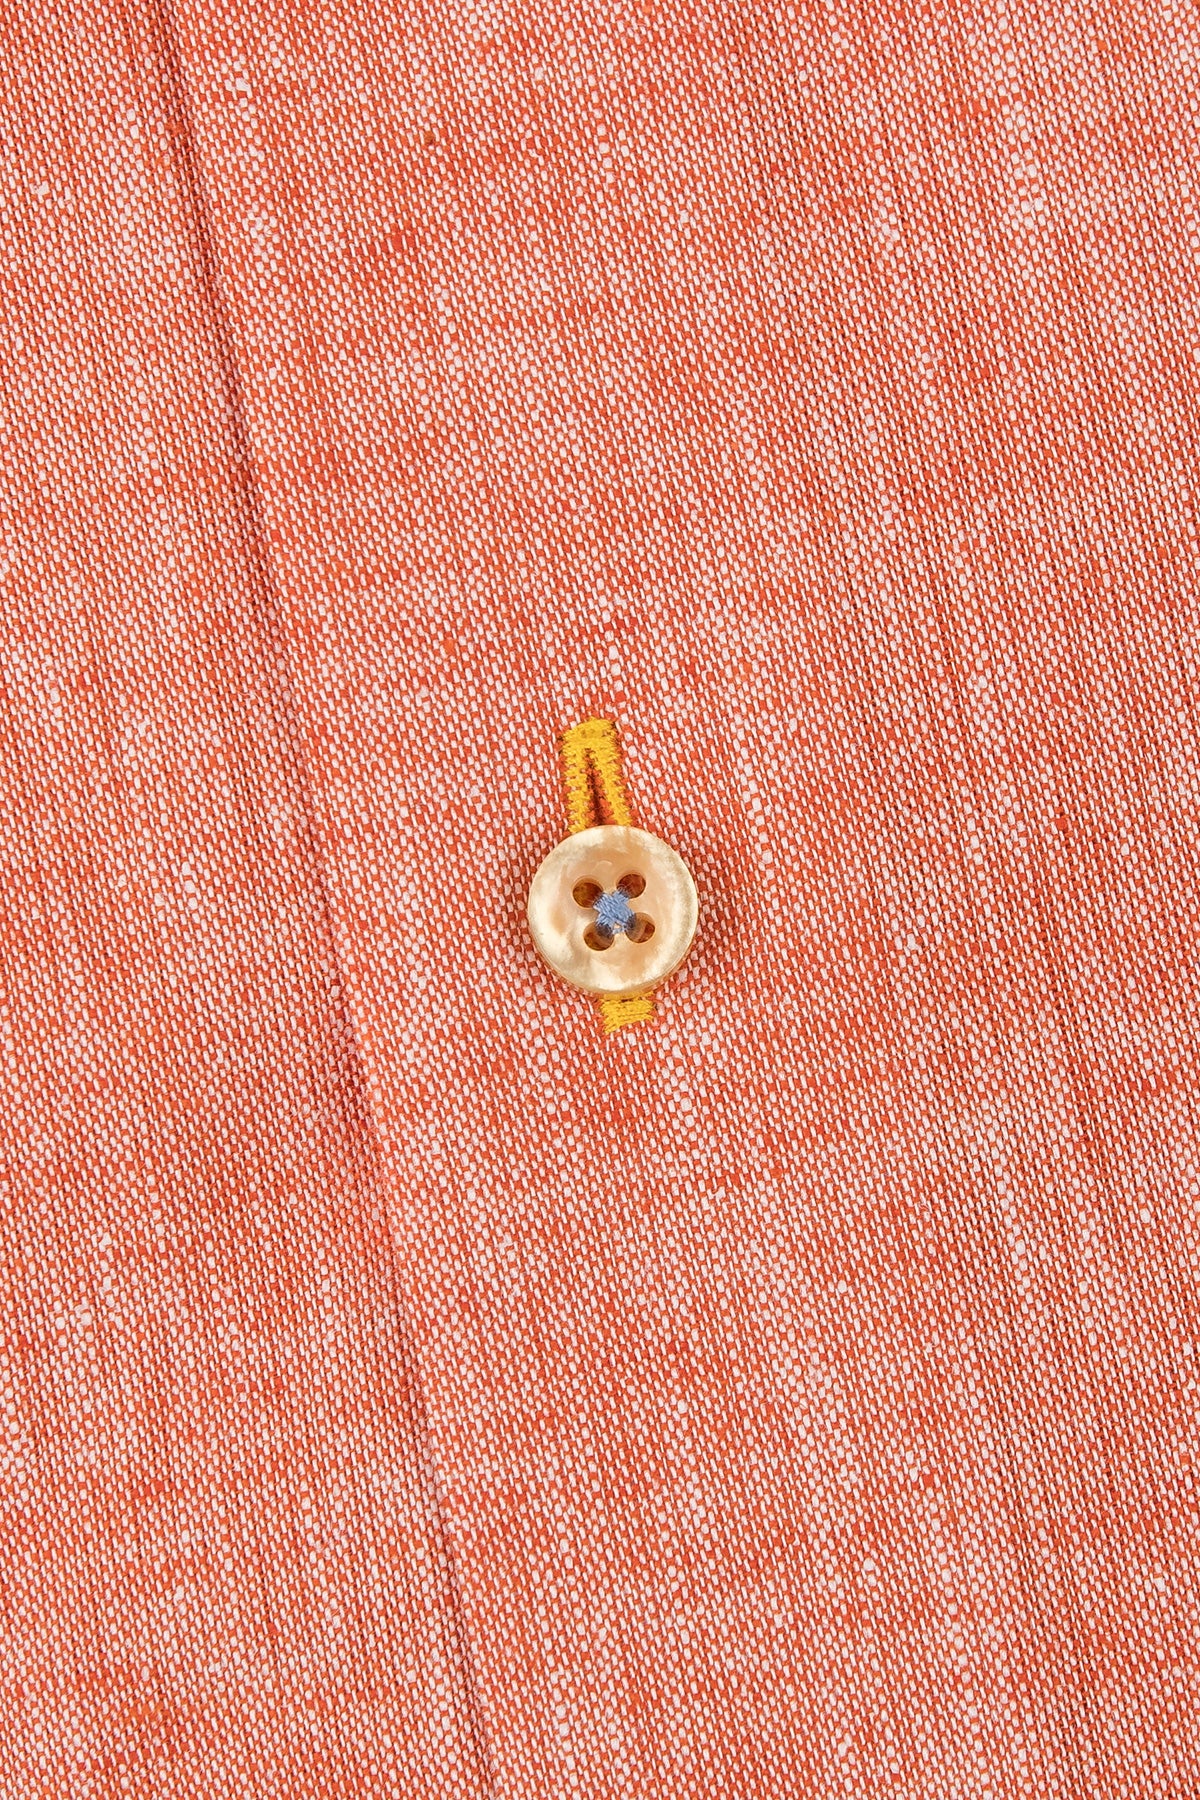 Orange regular fit shirt with contrast details